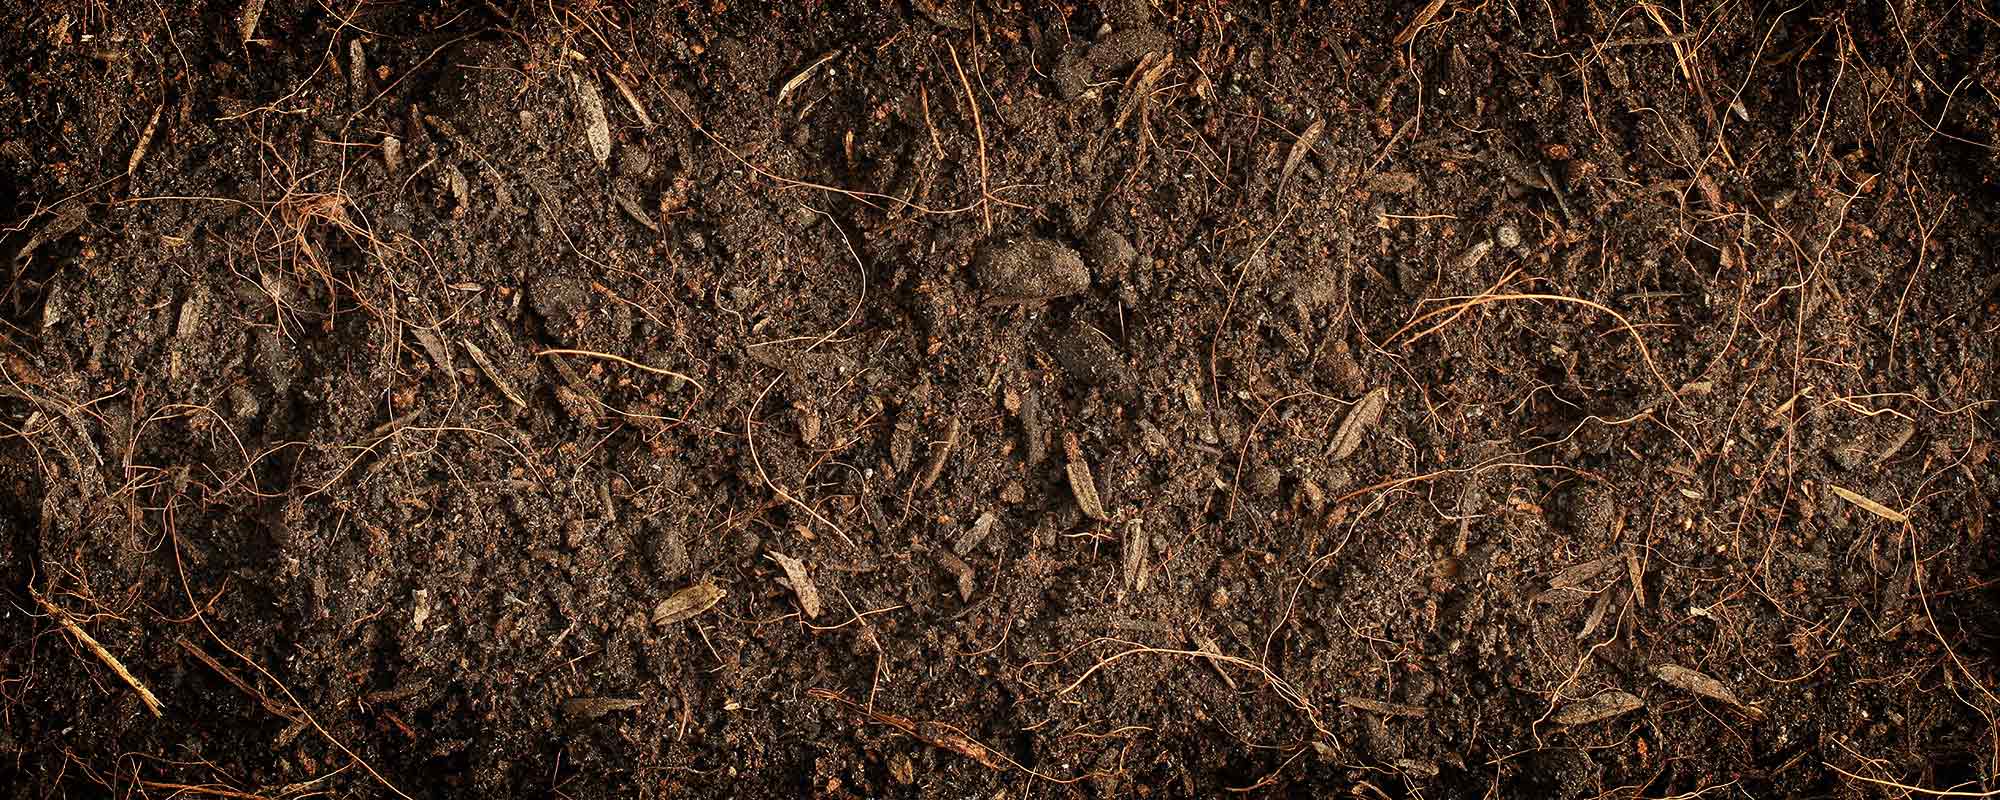 Неприятный почва. Почва с травой. Почва текстура. Земля с корешками. Текстура навоза.